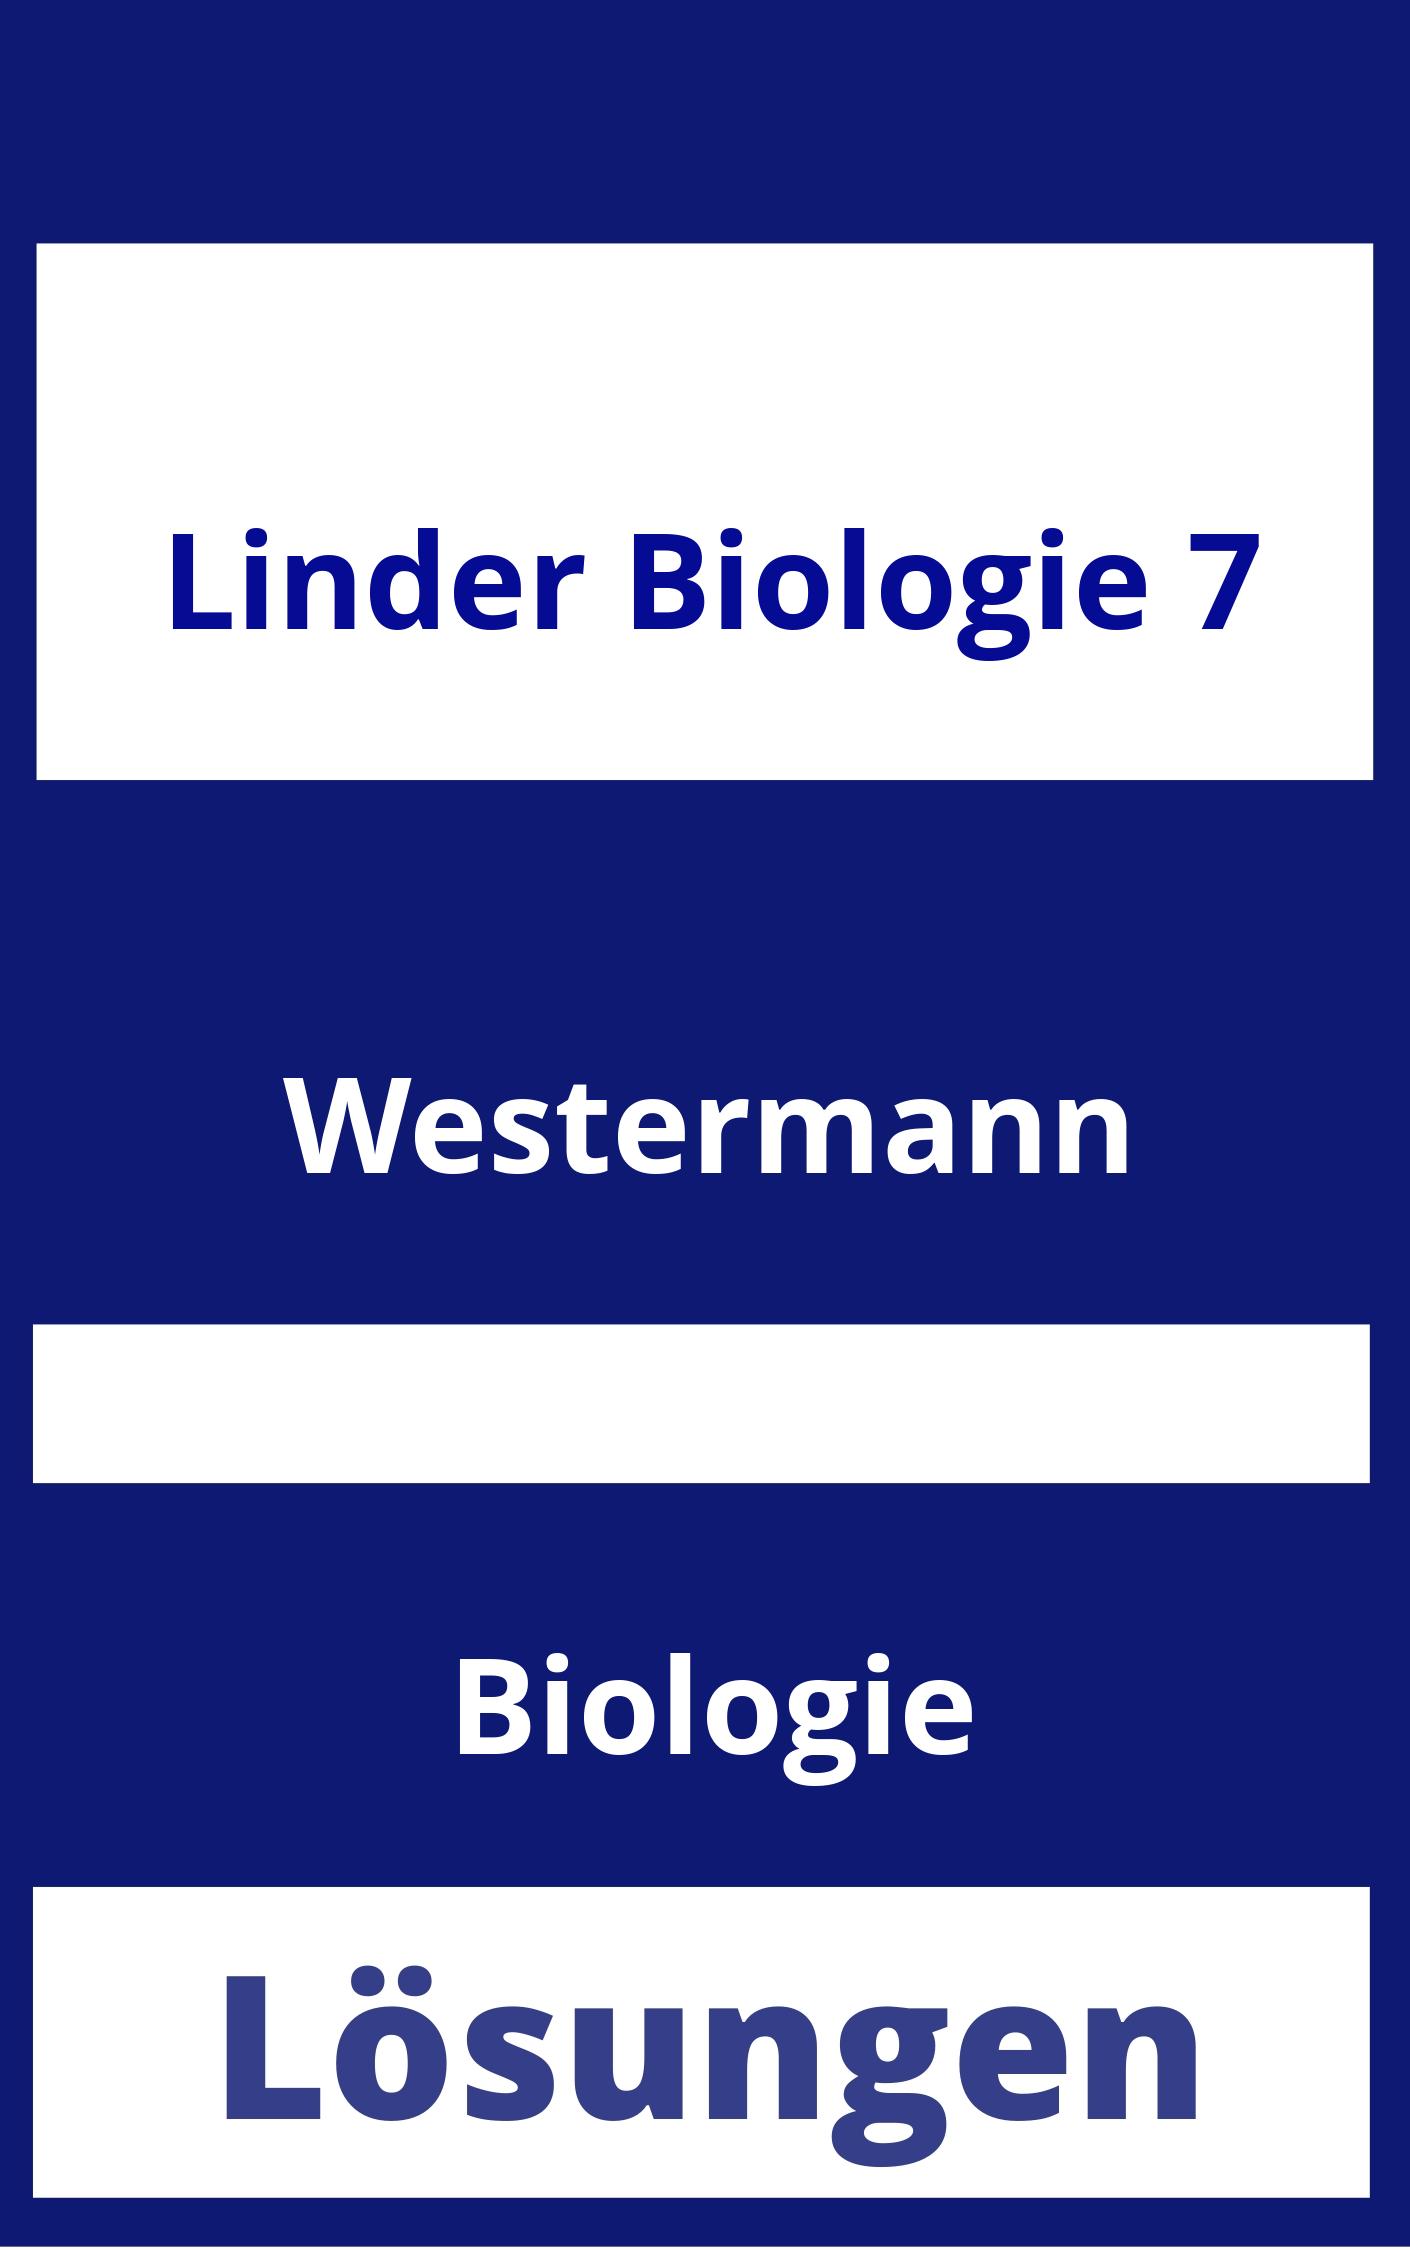 Linder Biologie 7